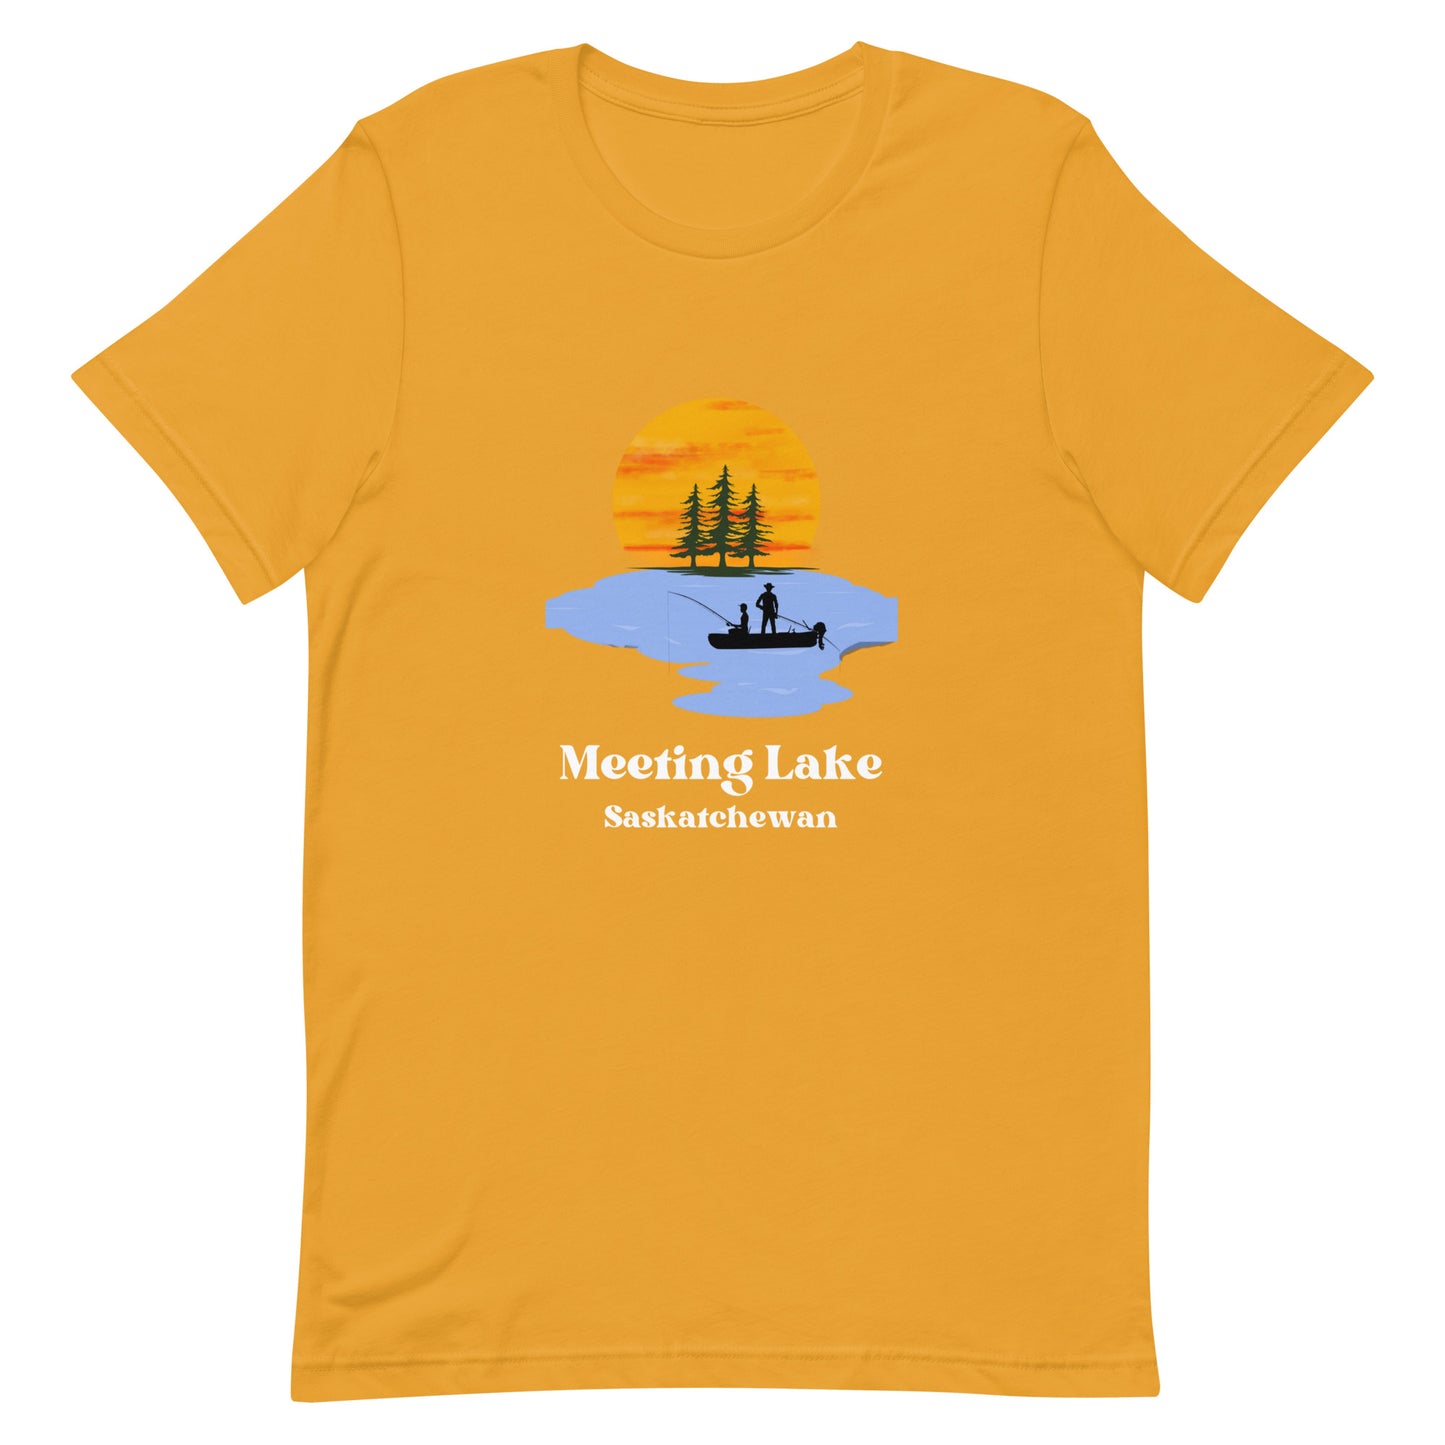 Meeting Lake, SK - Men's T-Shirt Fishing